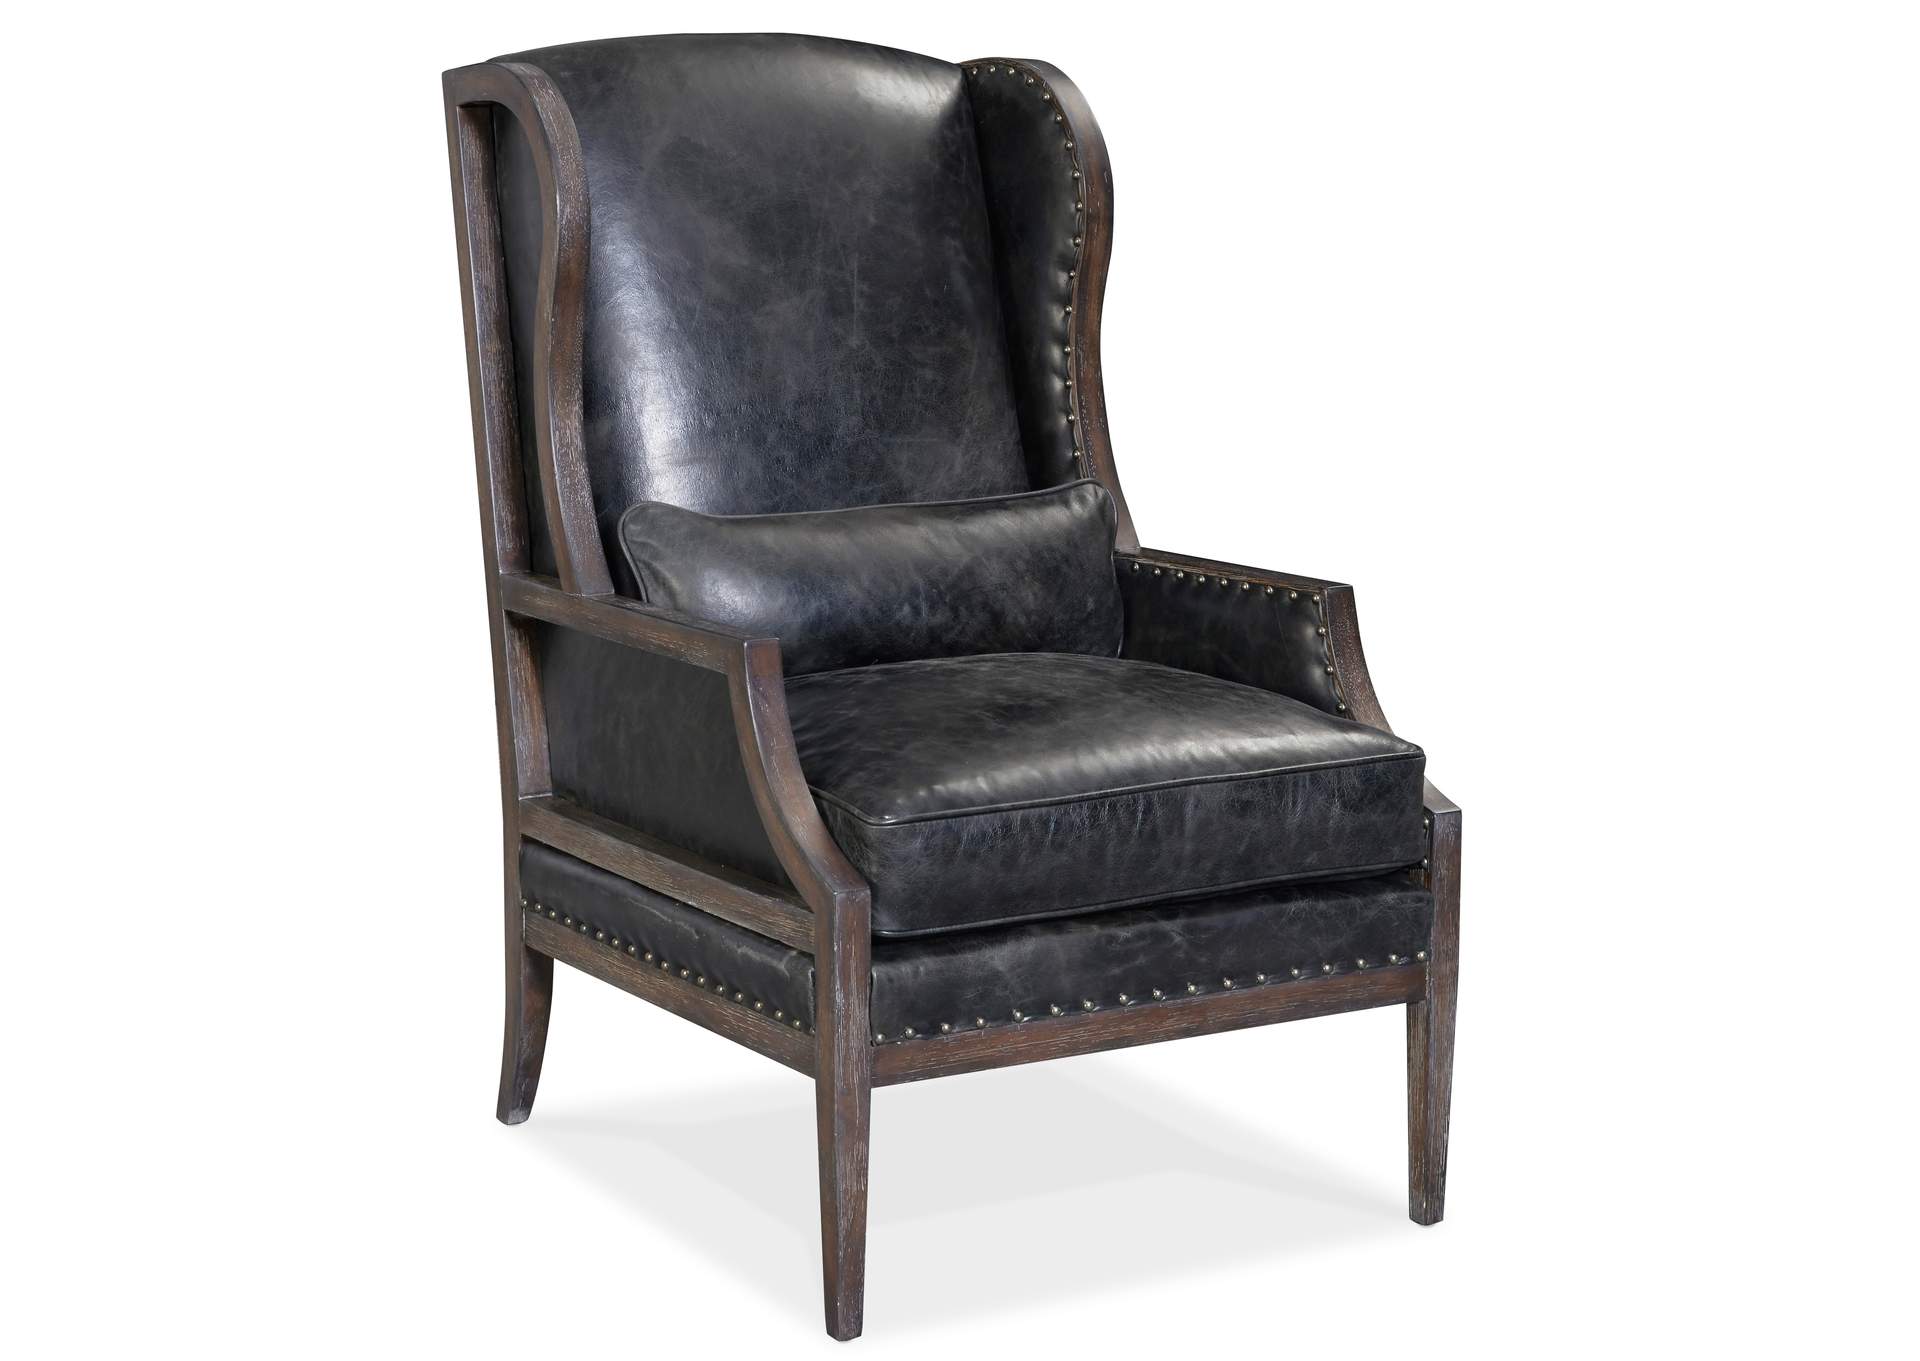 Laurel Laurel Exposed Wood Club Chair,Hooker Furniture